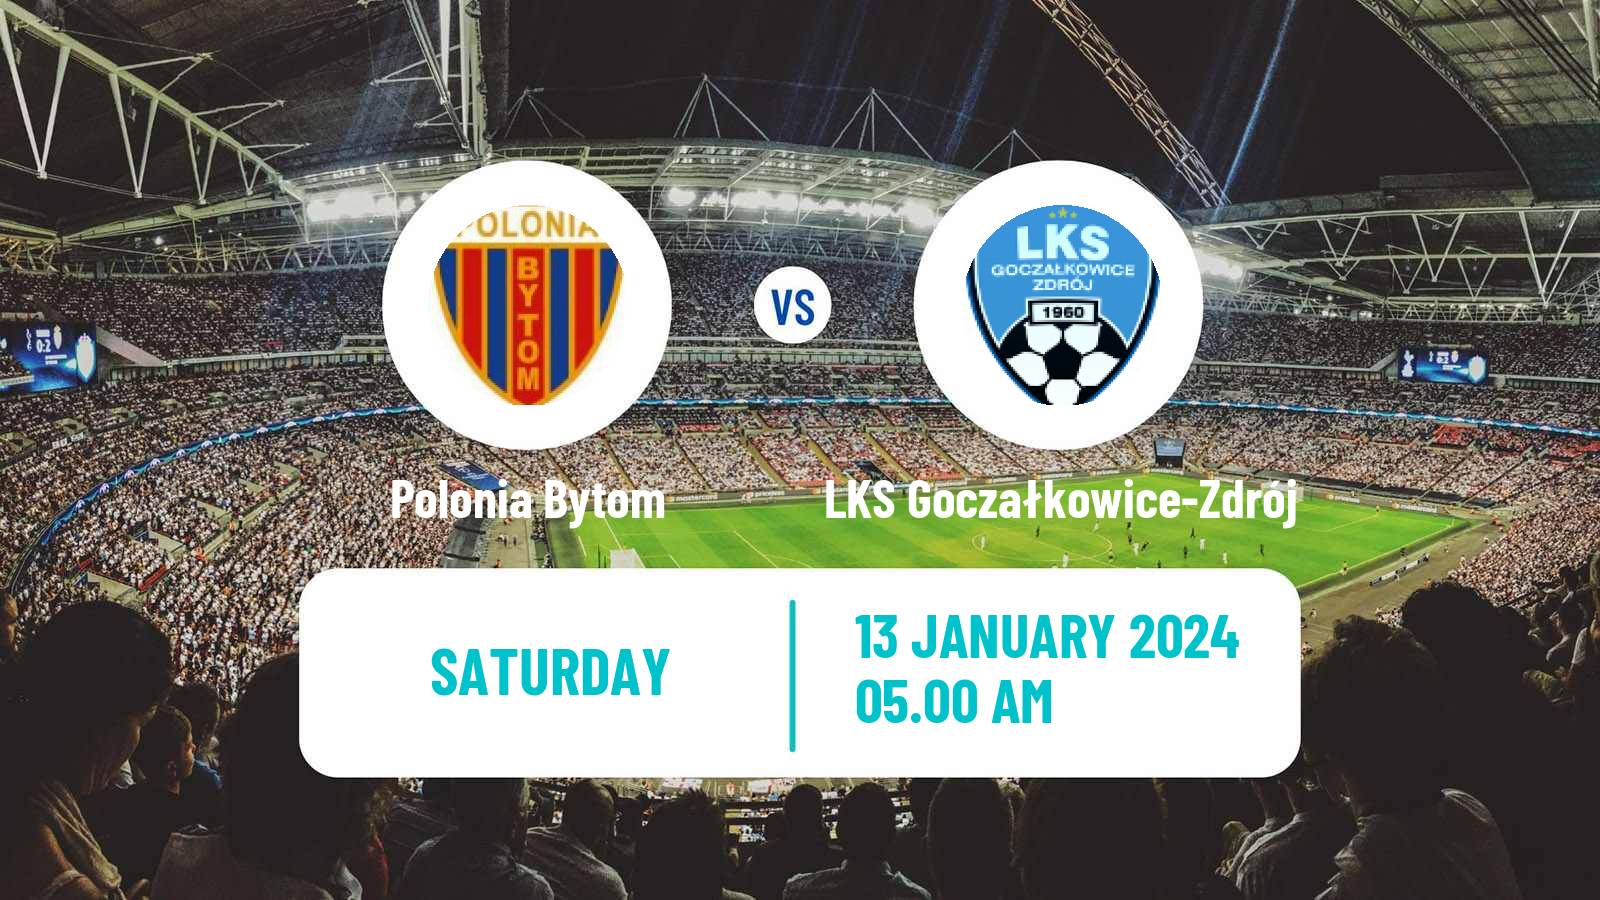 Soccer Club Friendly Polonia Bytom - LKS Goczałkowice-Zdrój